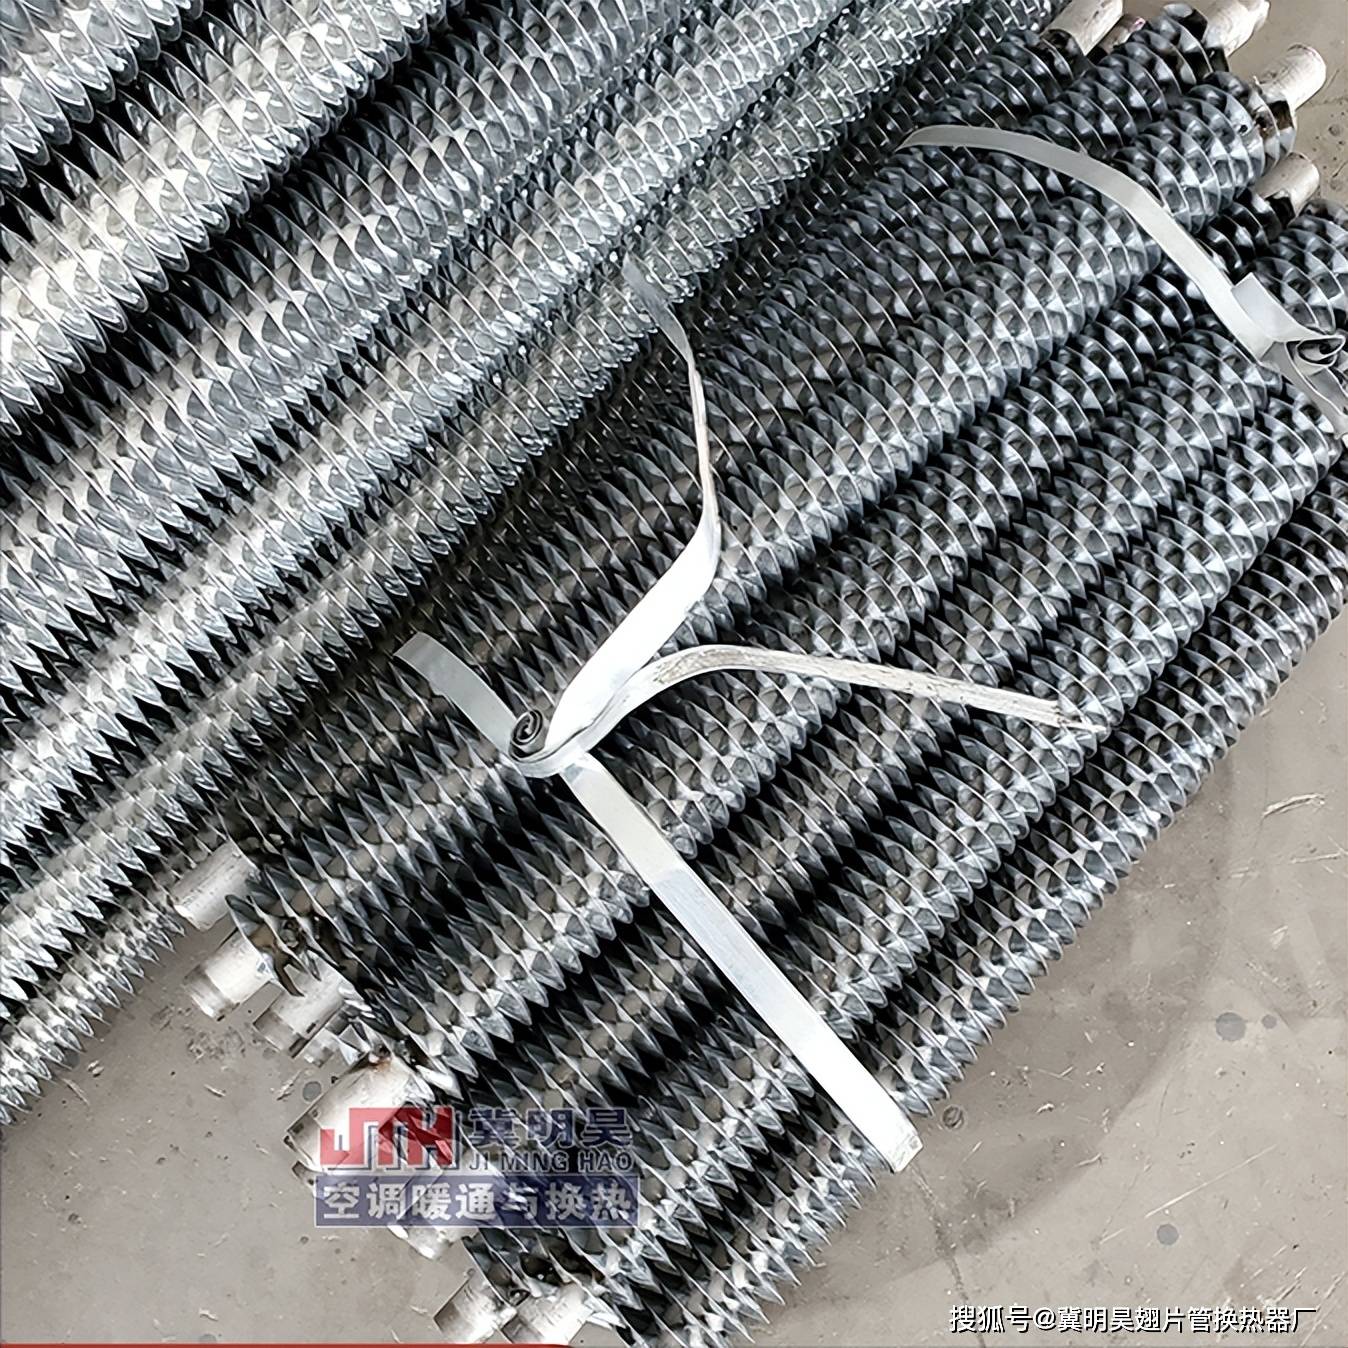 高频焊翅片管散热器是一种通过高频焊接技术将翅片焊接在基管上的散热